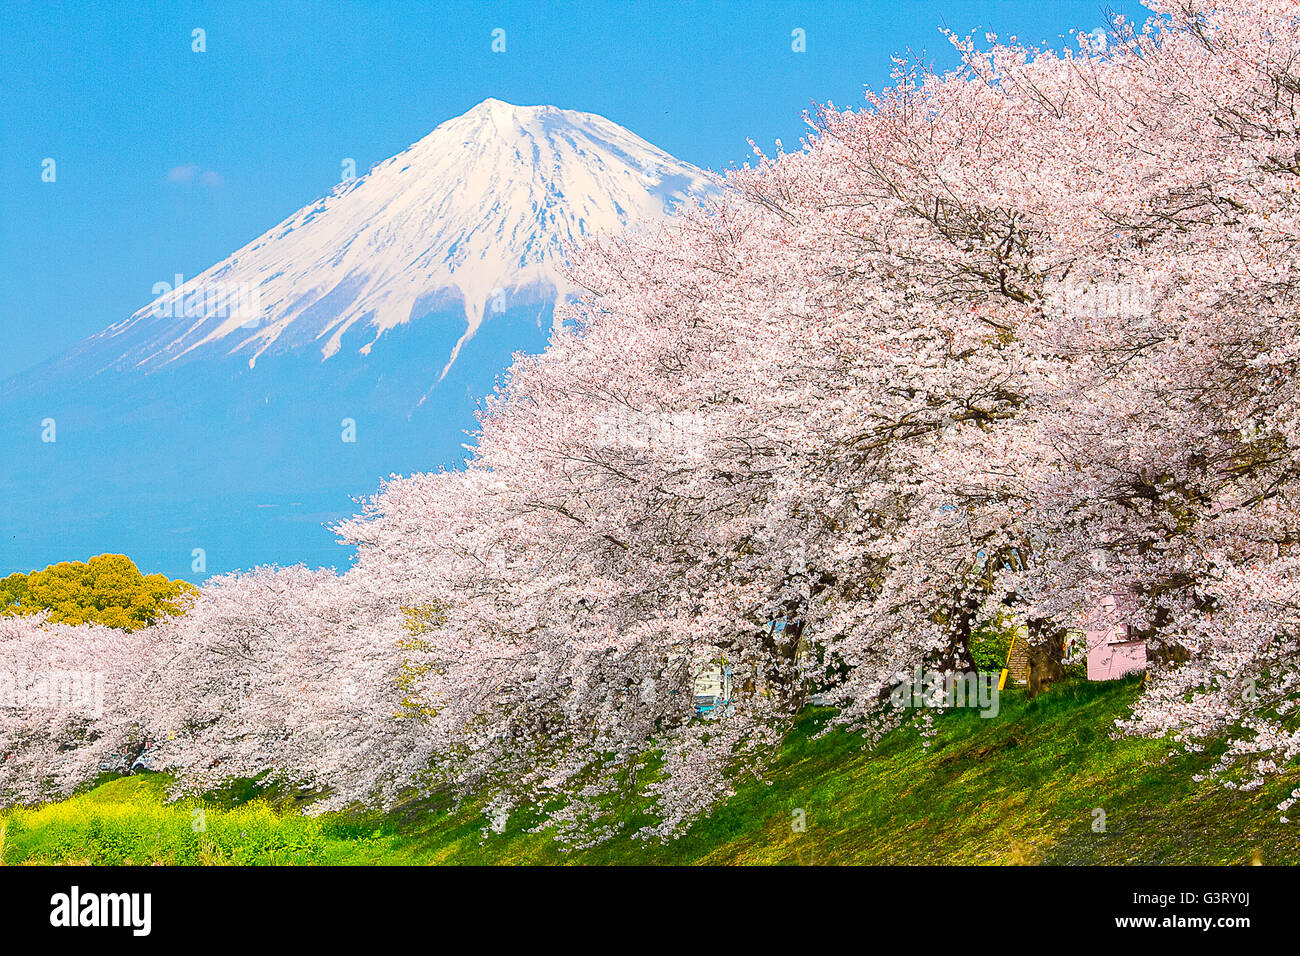 Sakura blossoms and Mountain Fuji at the river in Japan spring season Stock Photo